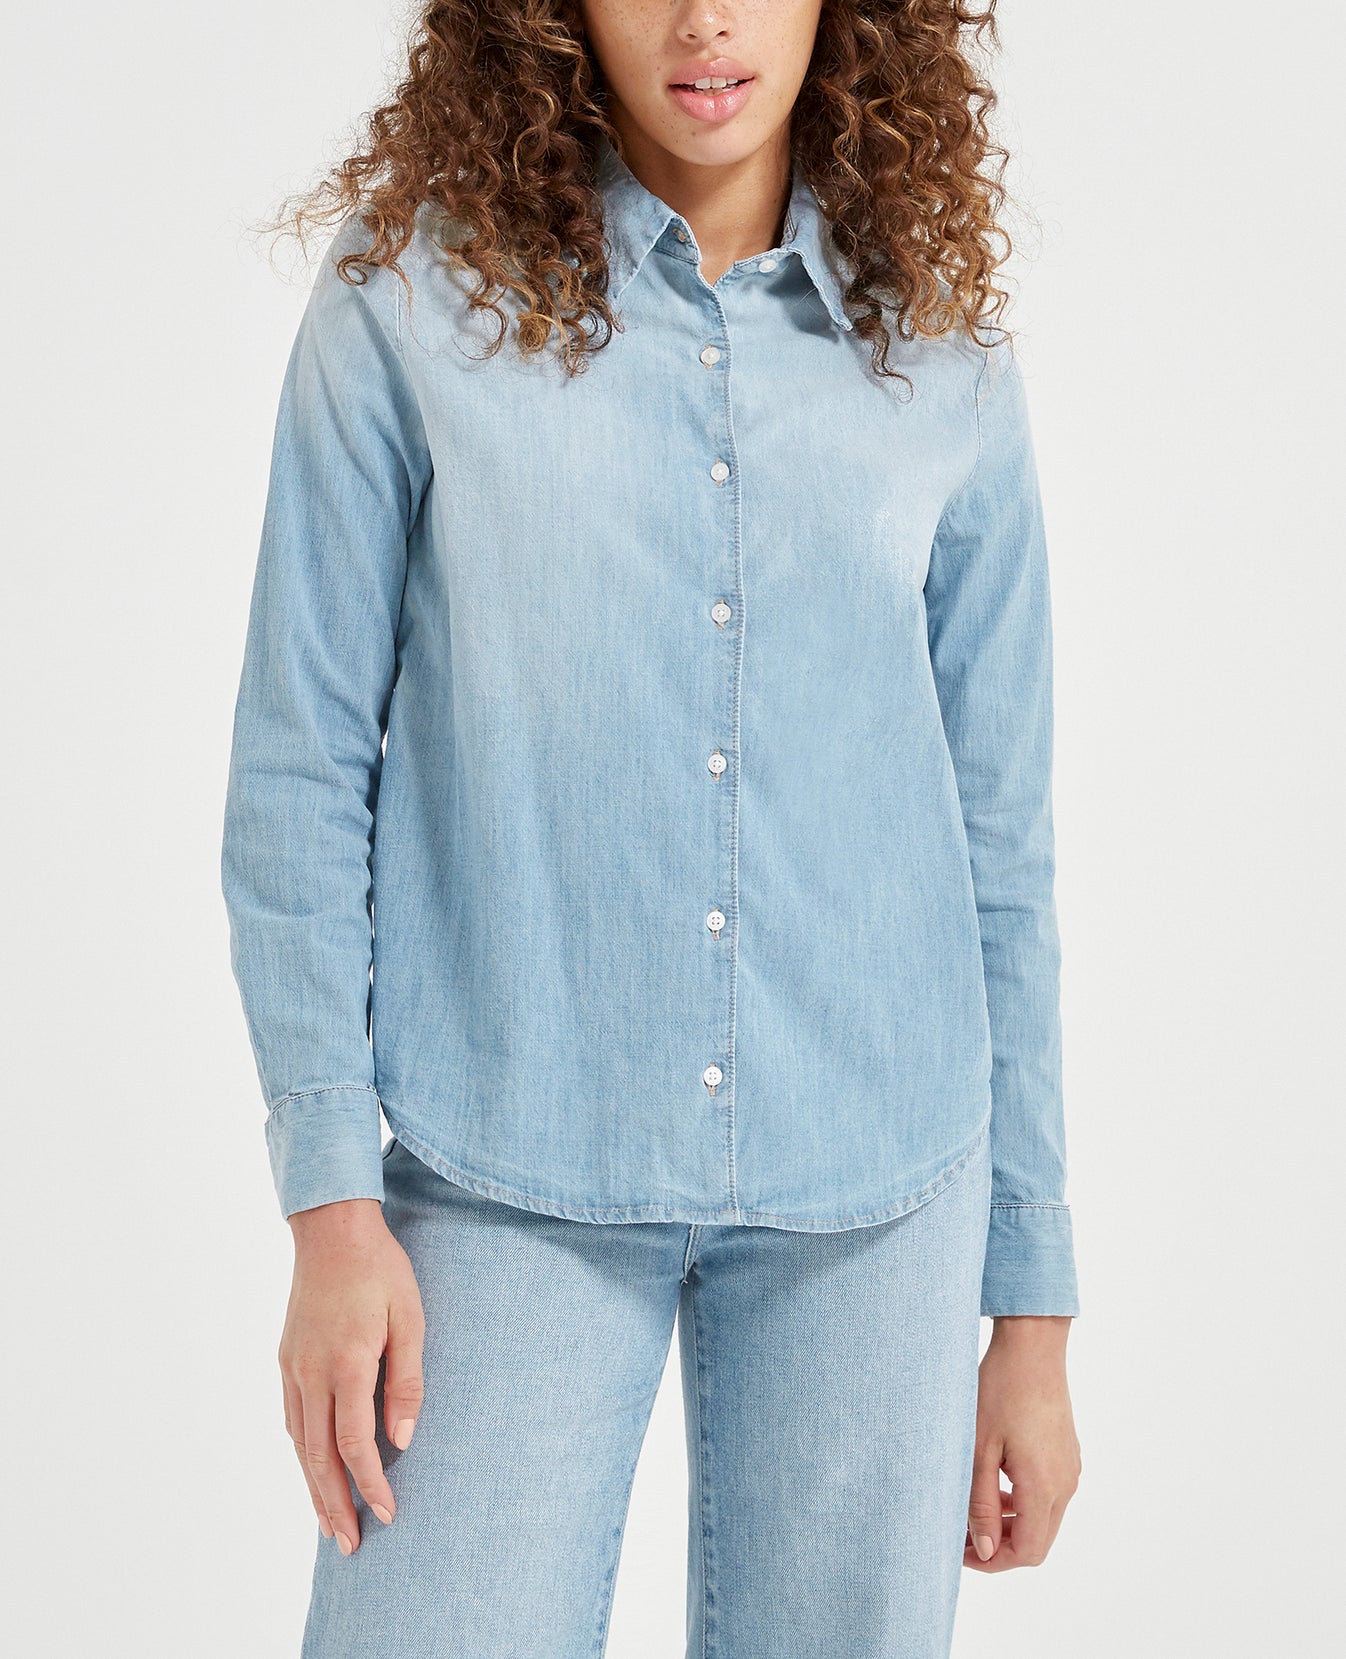 Cade Shirt Azure Light Classic Button Up Shirt Women Tops Photo 1